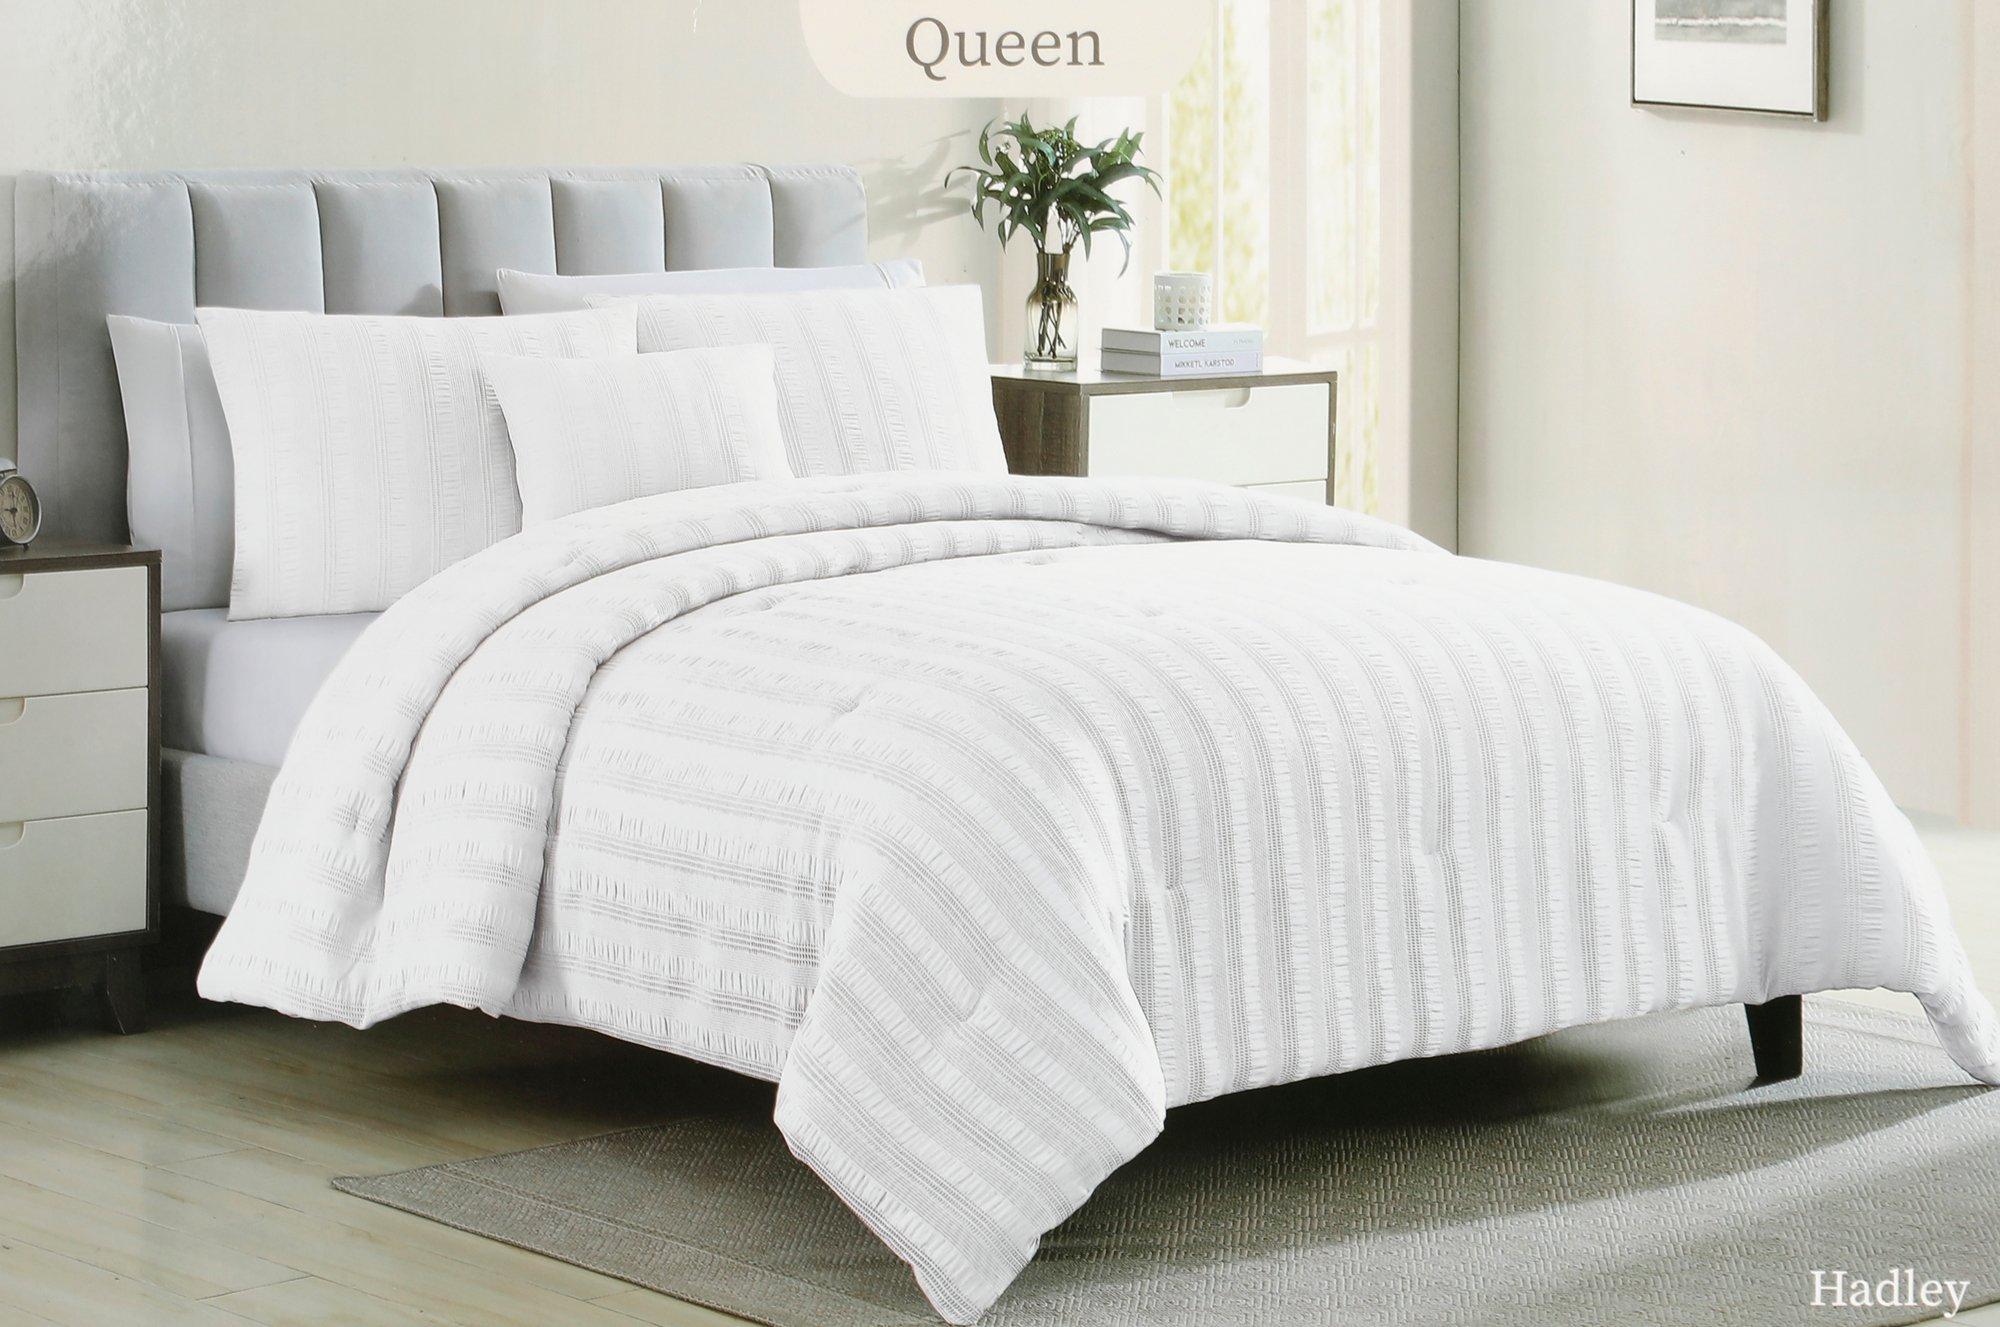 Queen 4 Pc Comforter Set